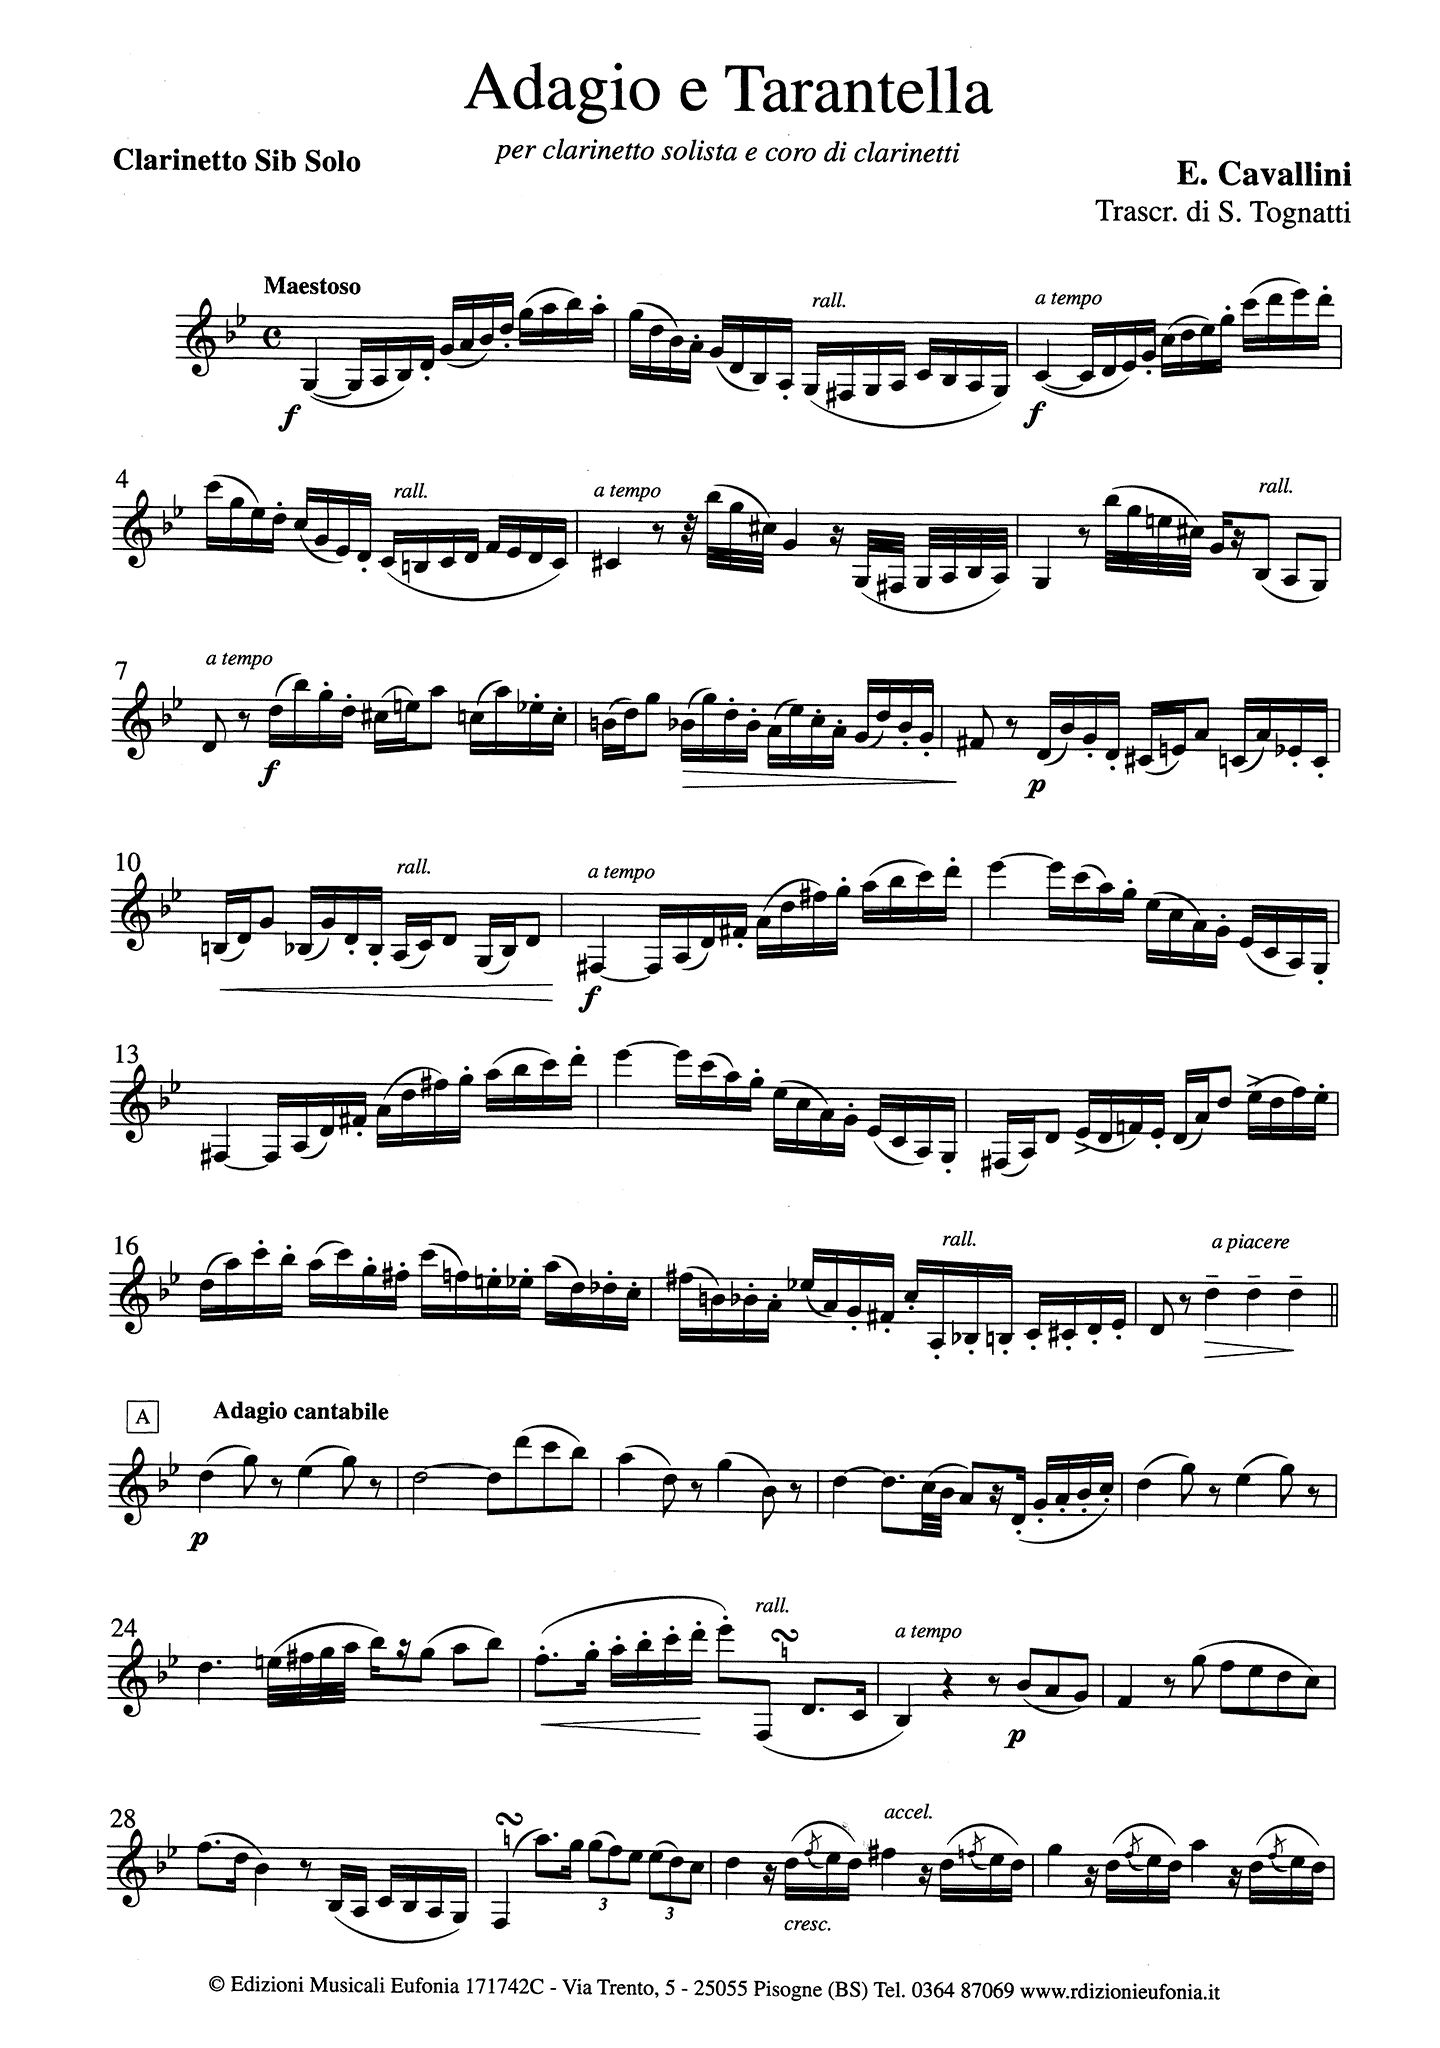 Adagio e Tarantella Clarinet part